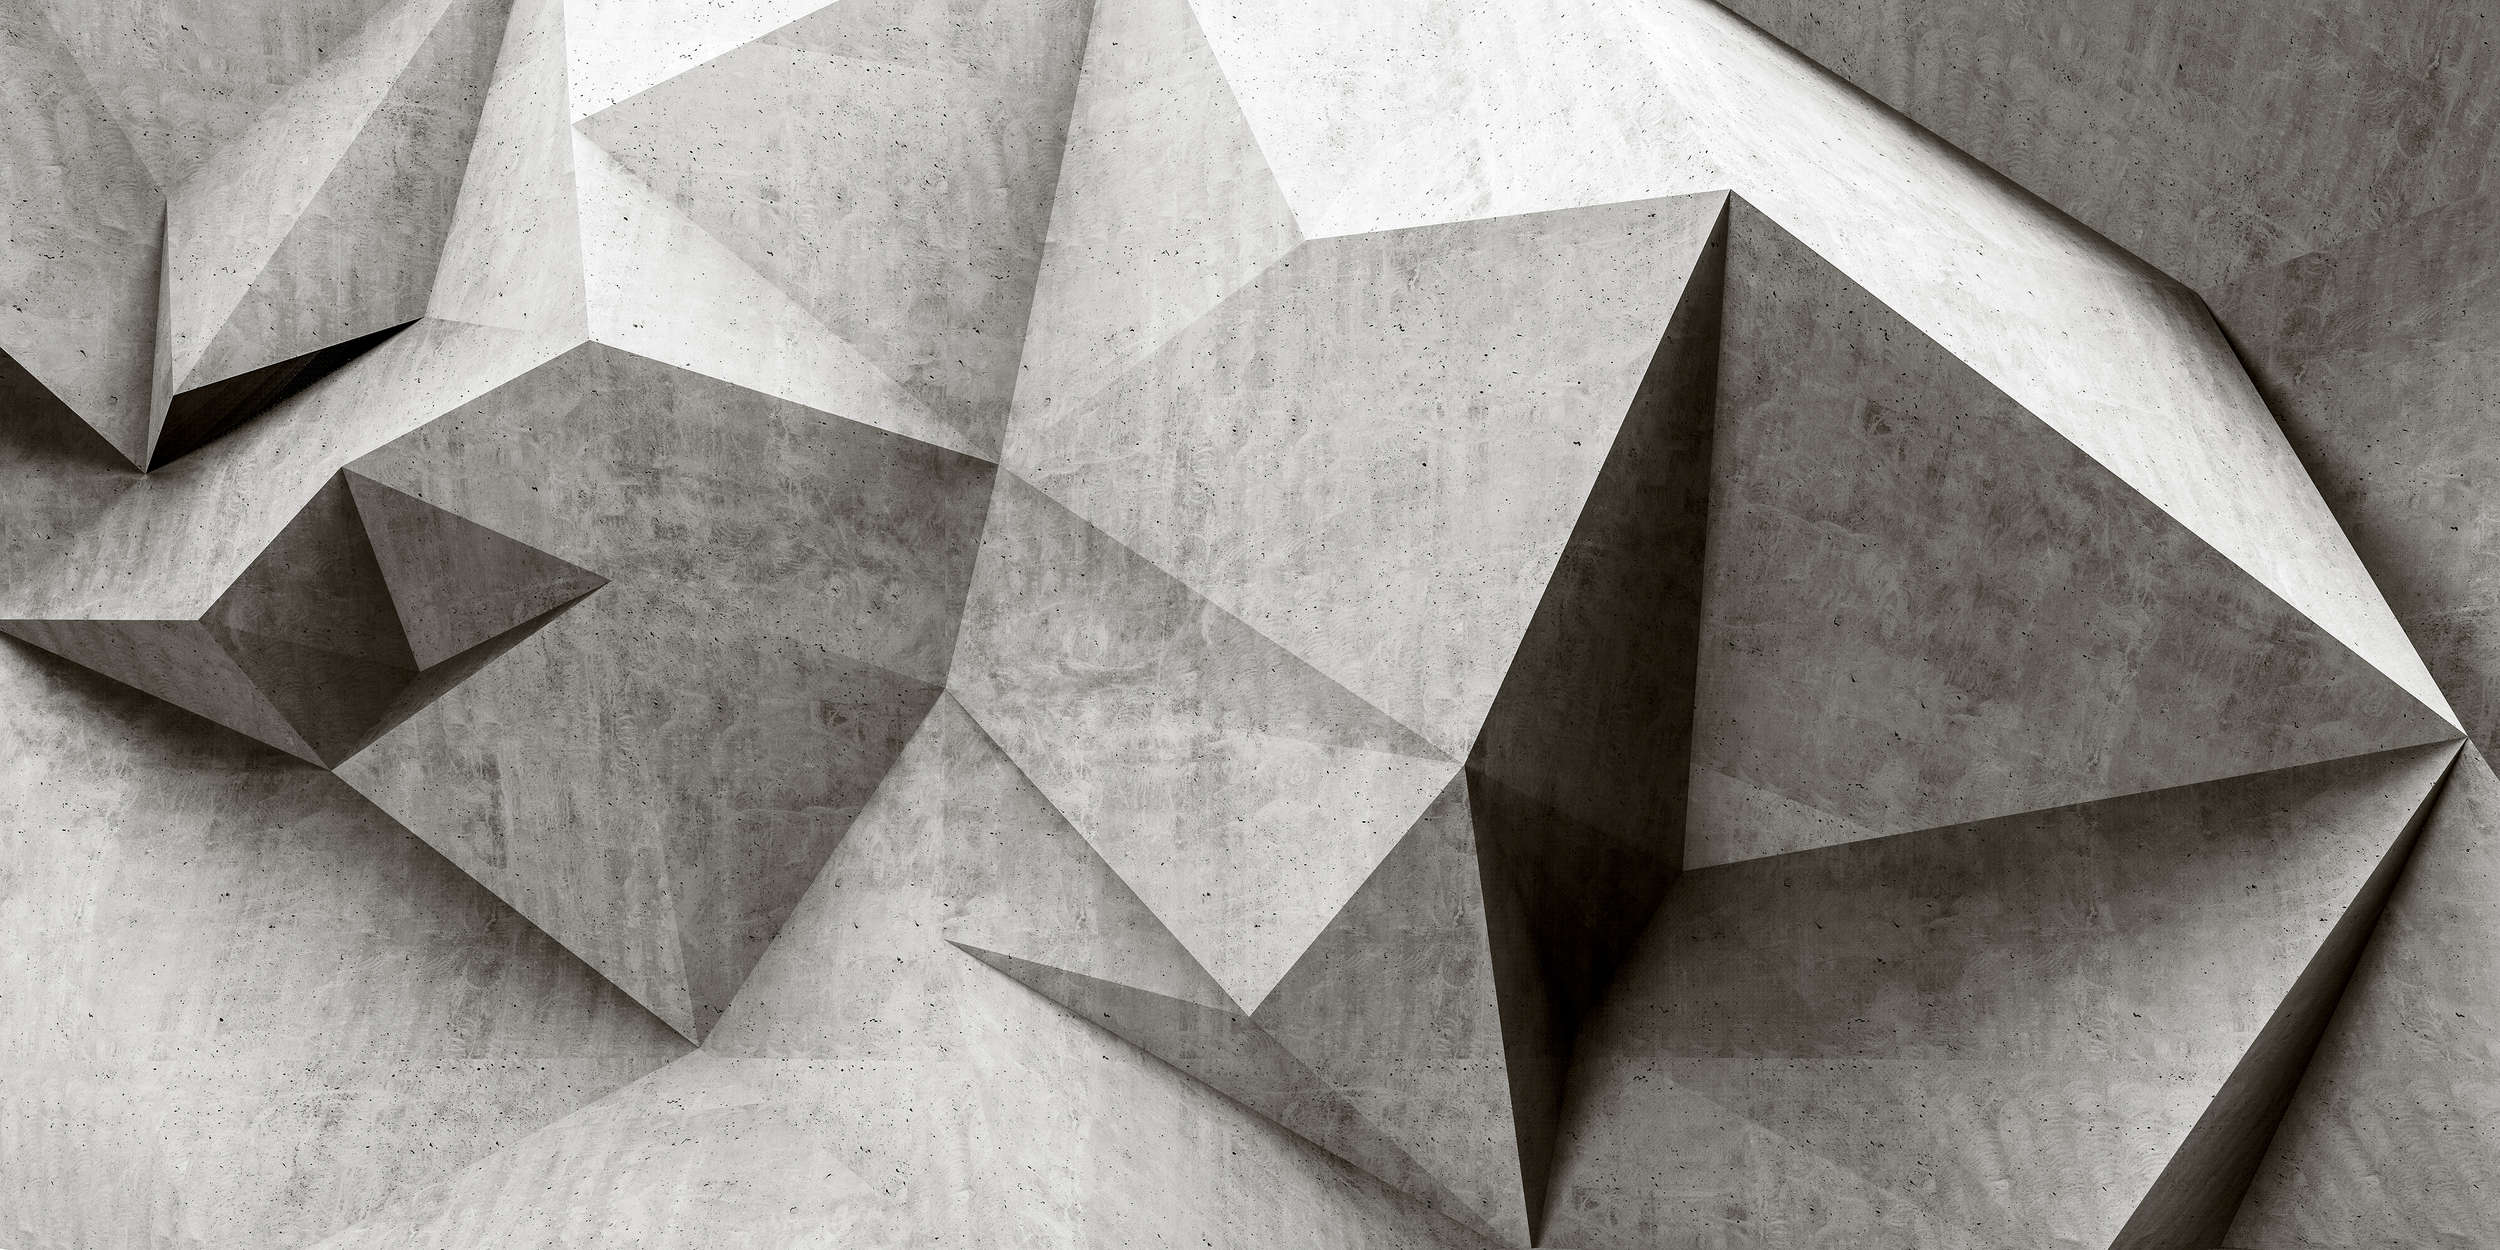             Boulder 1 - Papier peint 3D cool polygone de béton - gris, noir | nacré intissé lisse
        